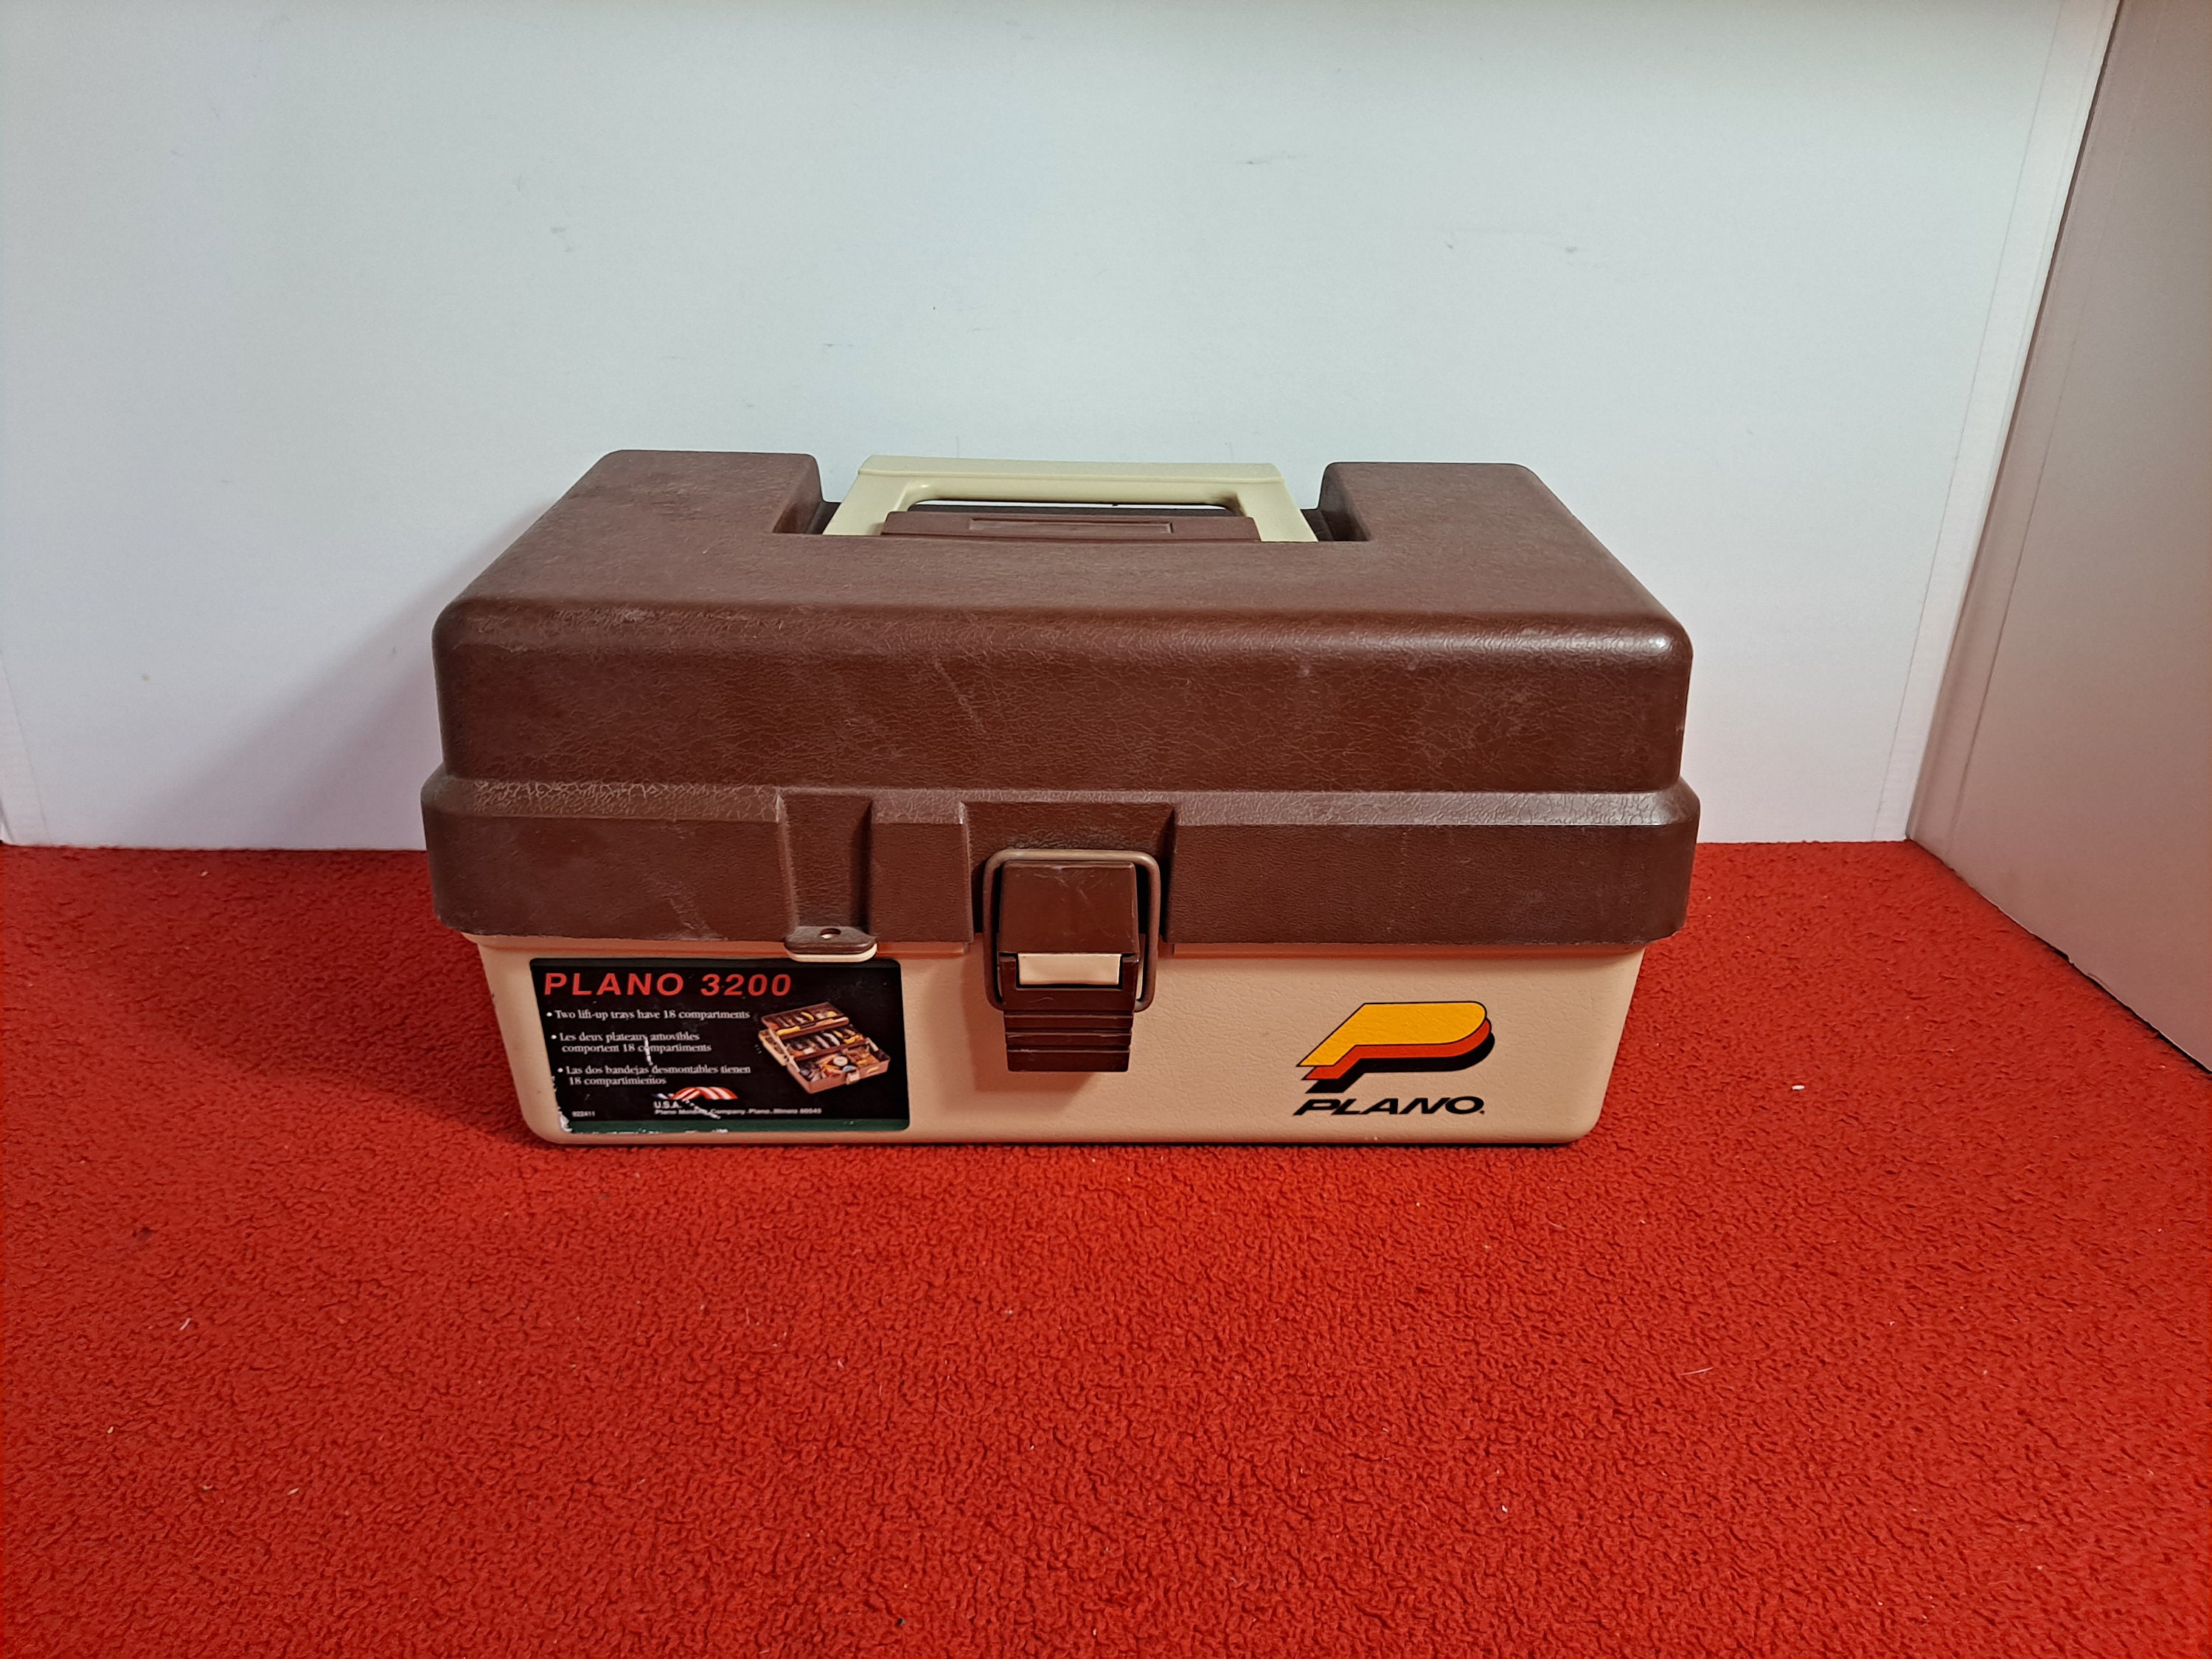 Vintage Tackle Box, Plano 3200 Tackle Box, Plastic Tackle Box, Art Supply  Box, Craft Box -  Israel